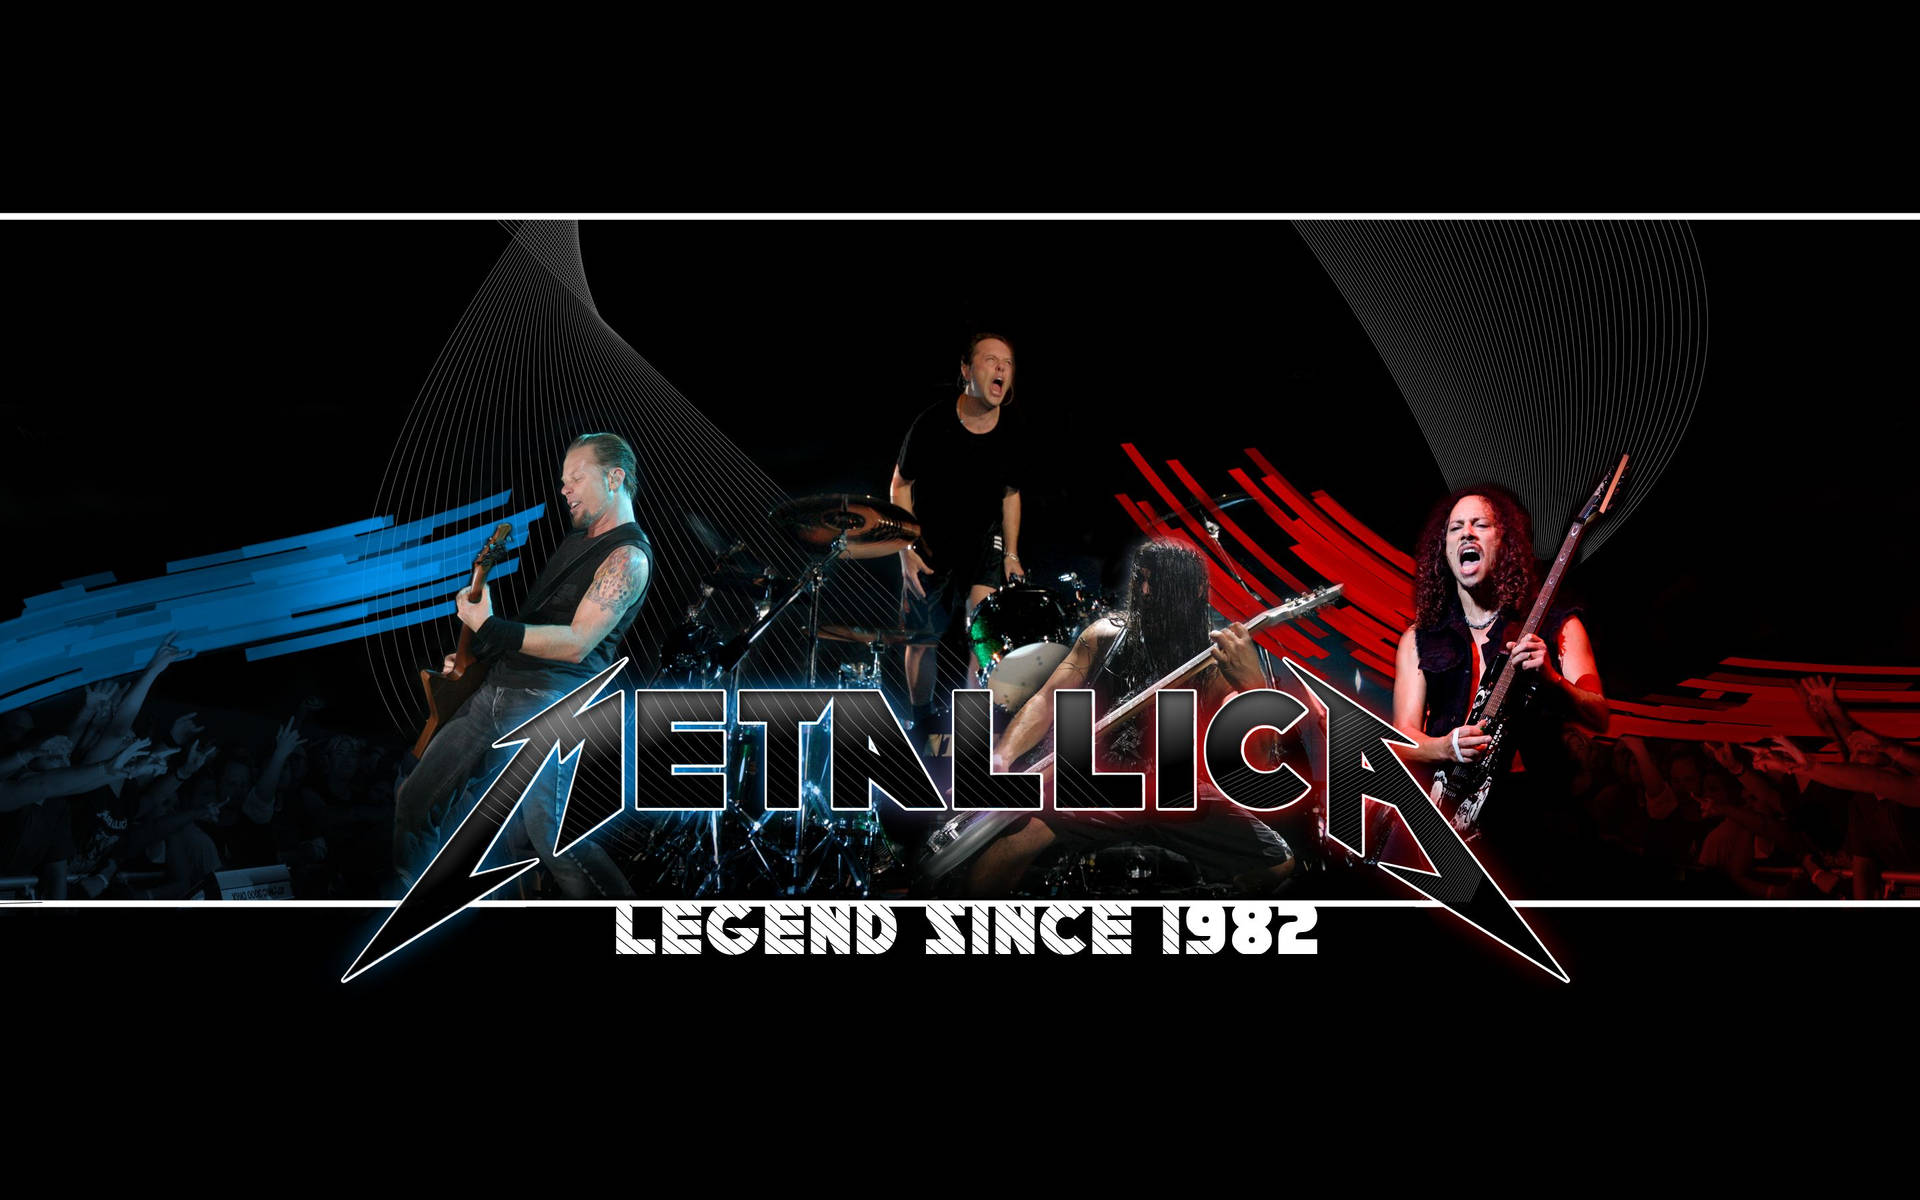 "Metallica - Legends since 1982" Wallpaper